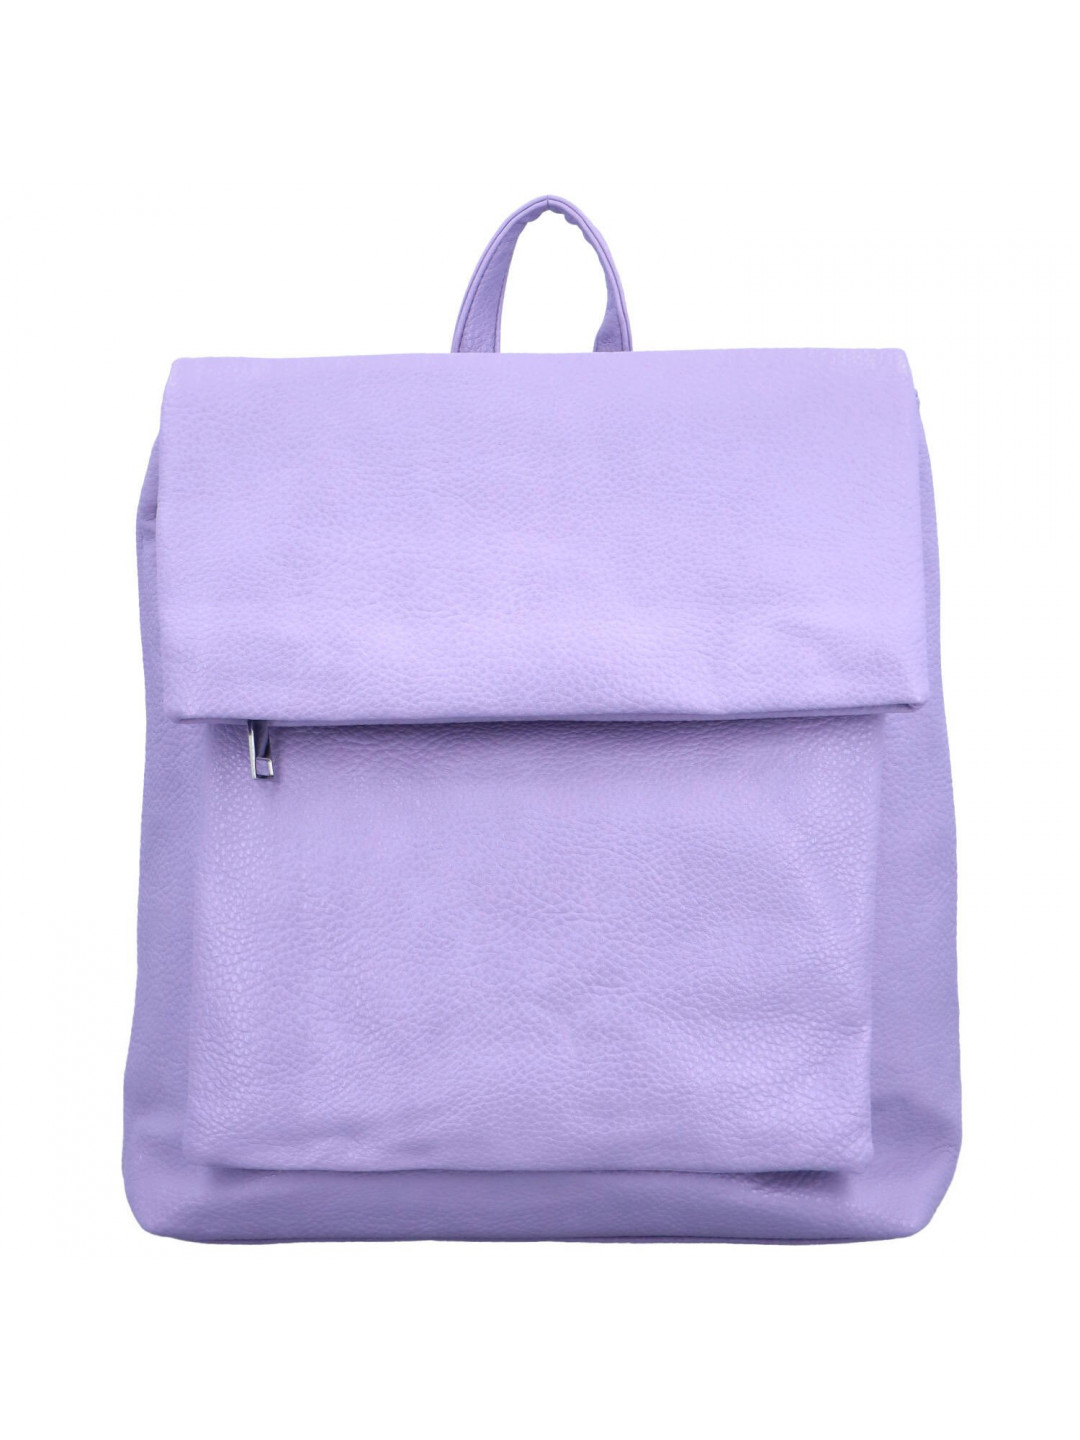 Dámský kabelko batoh fialový – Firenze Noland